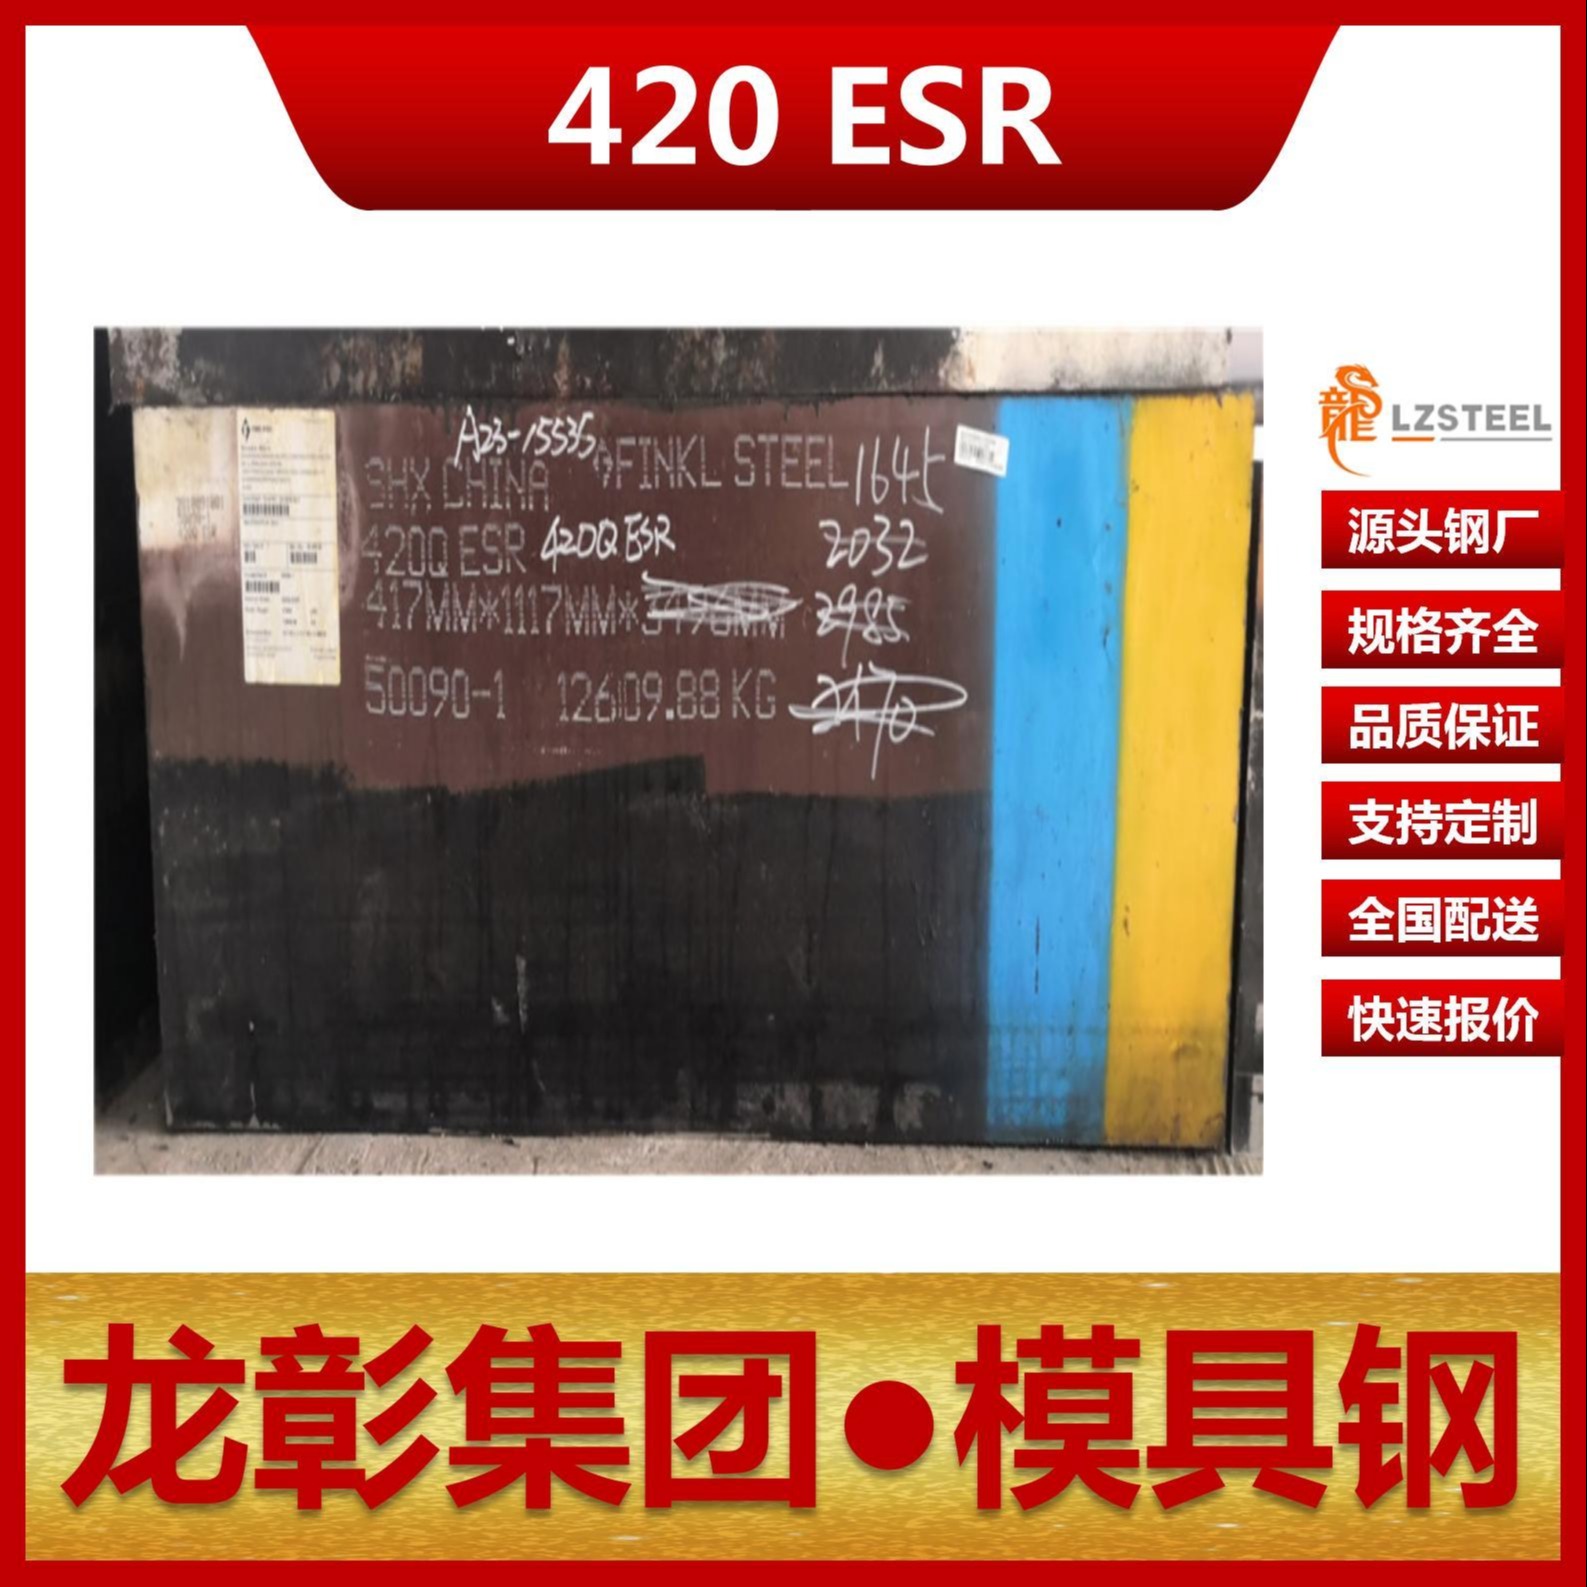 芬可乐420 ESR模具钢现货批零 进口420 ESR扁钢圆棒模具钢龙彰集团